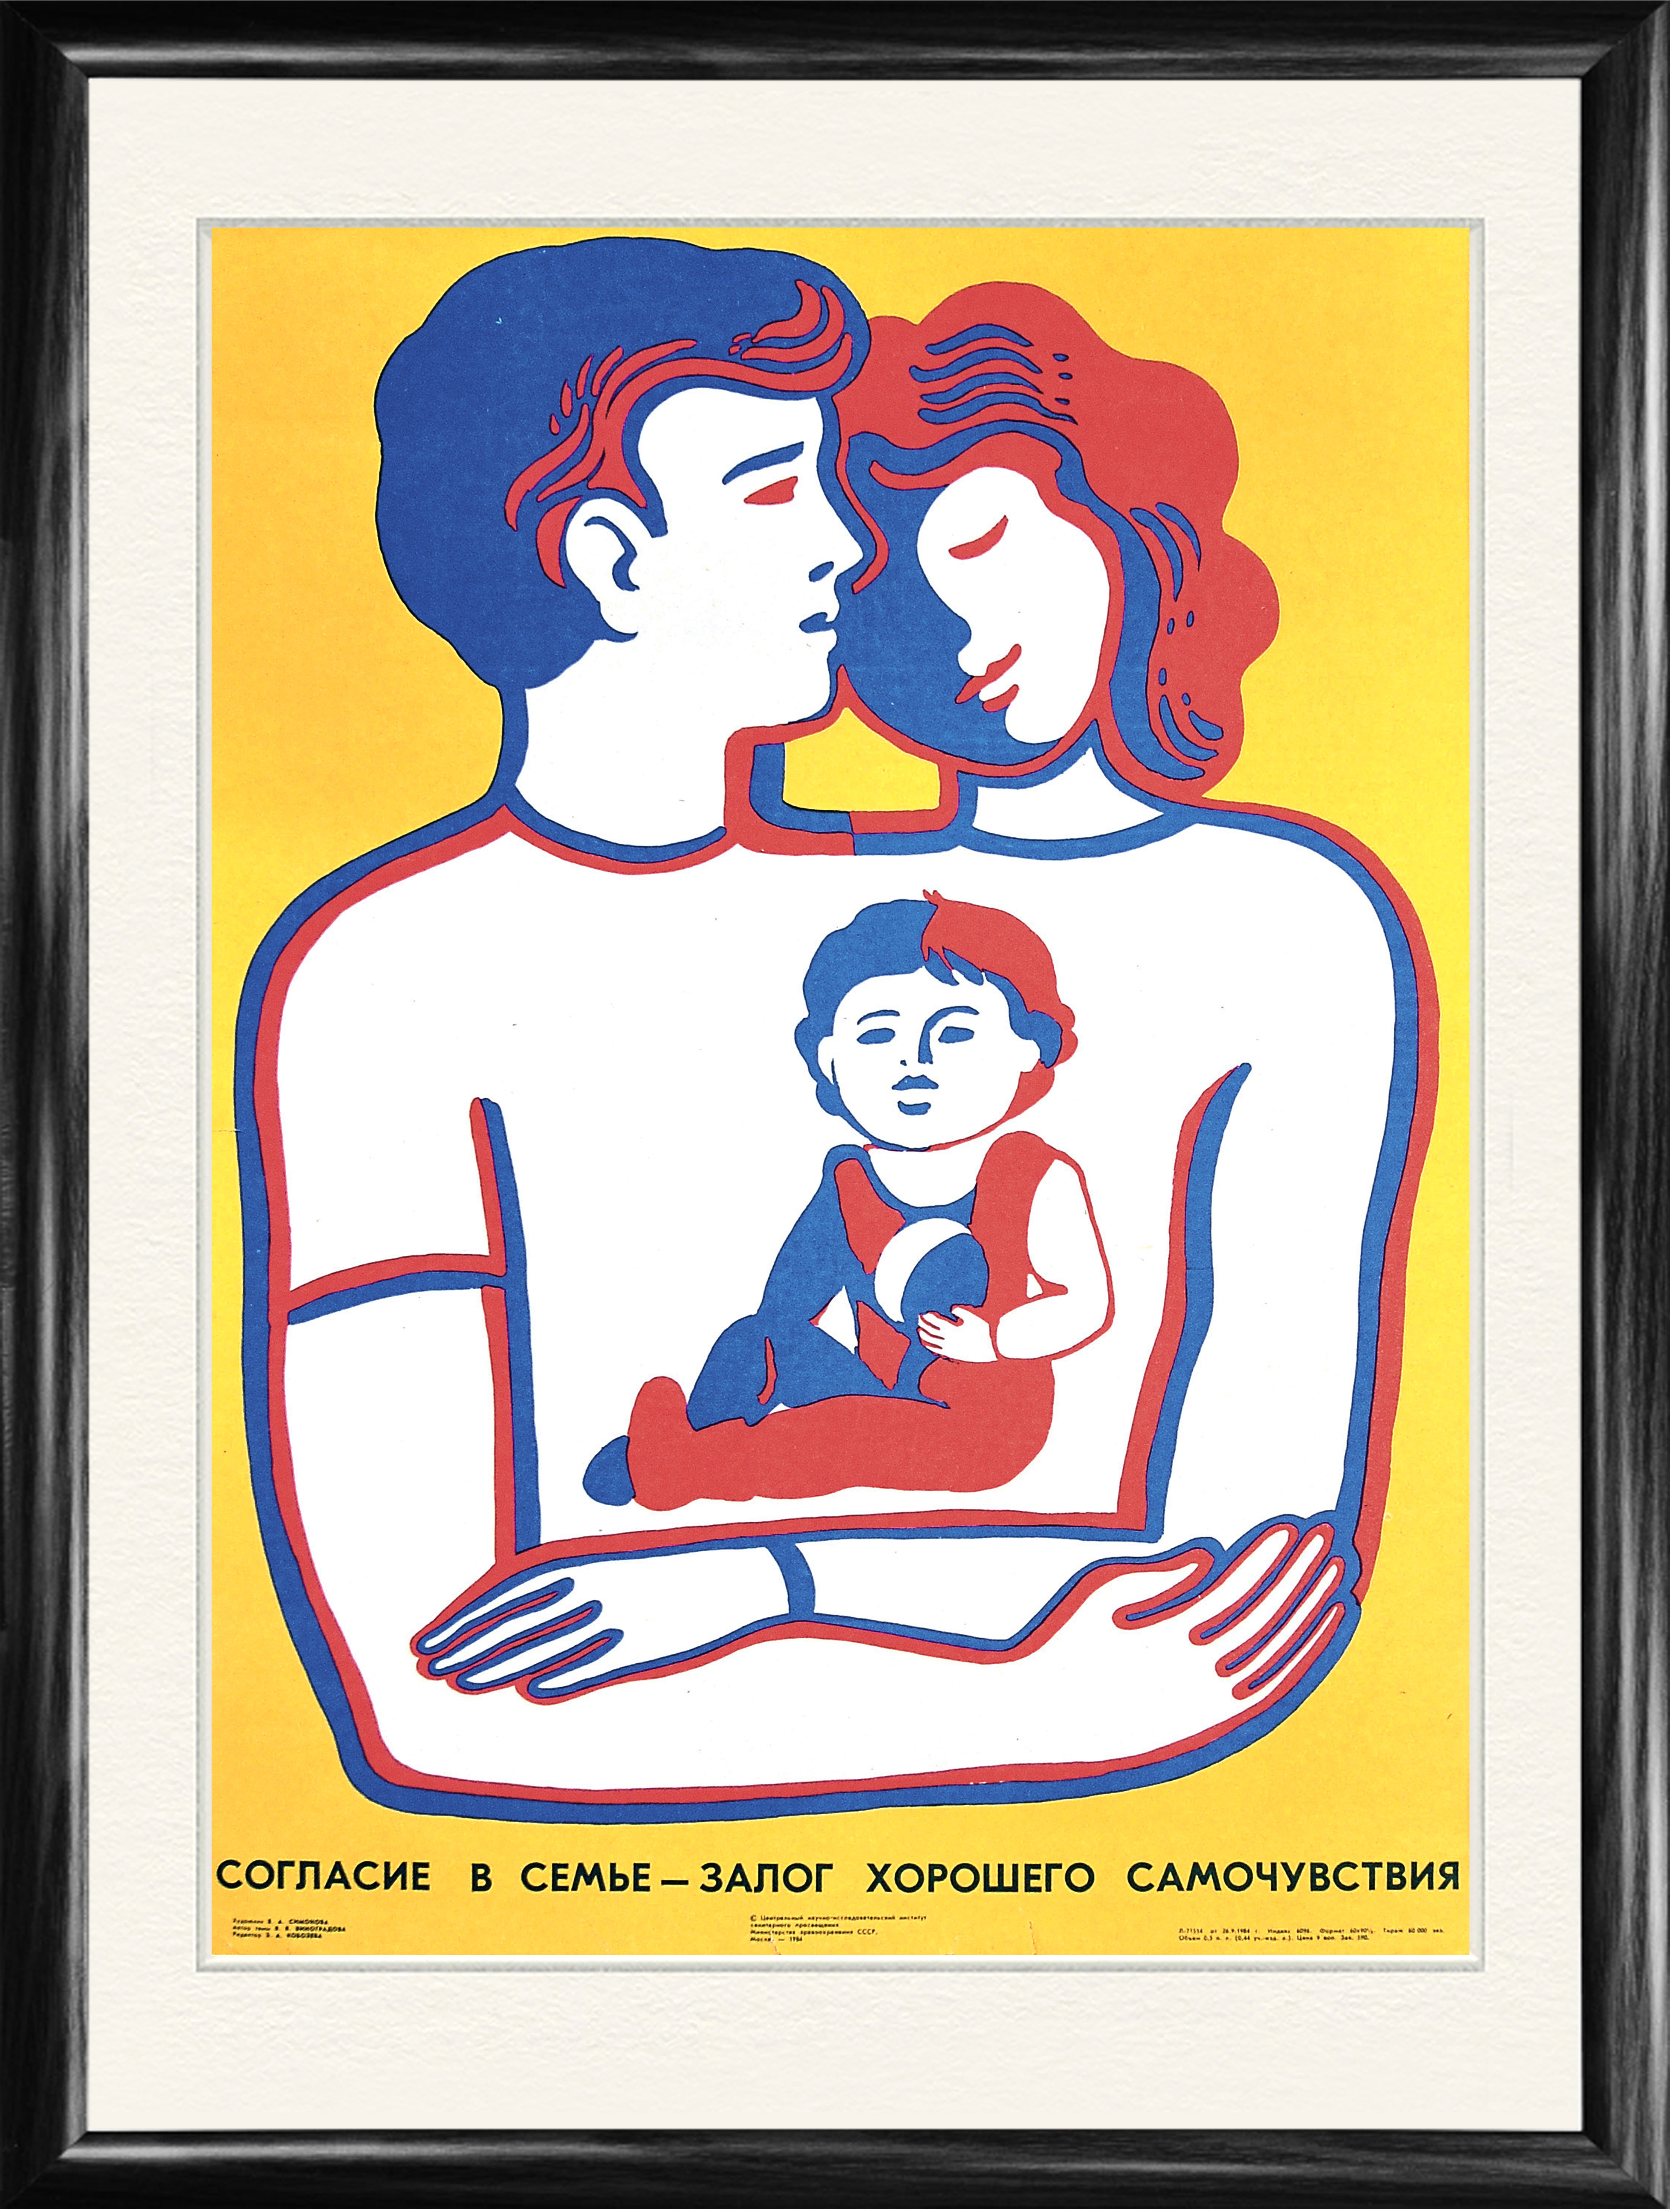 Рекламный плакат социальной профессии. Советскиксоциальные плакаты. Социальный плакат на тему семья. Советские социальные плакаты. Kfrfns j ctvmt.